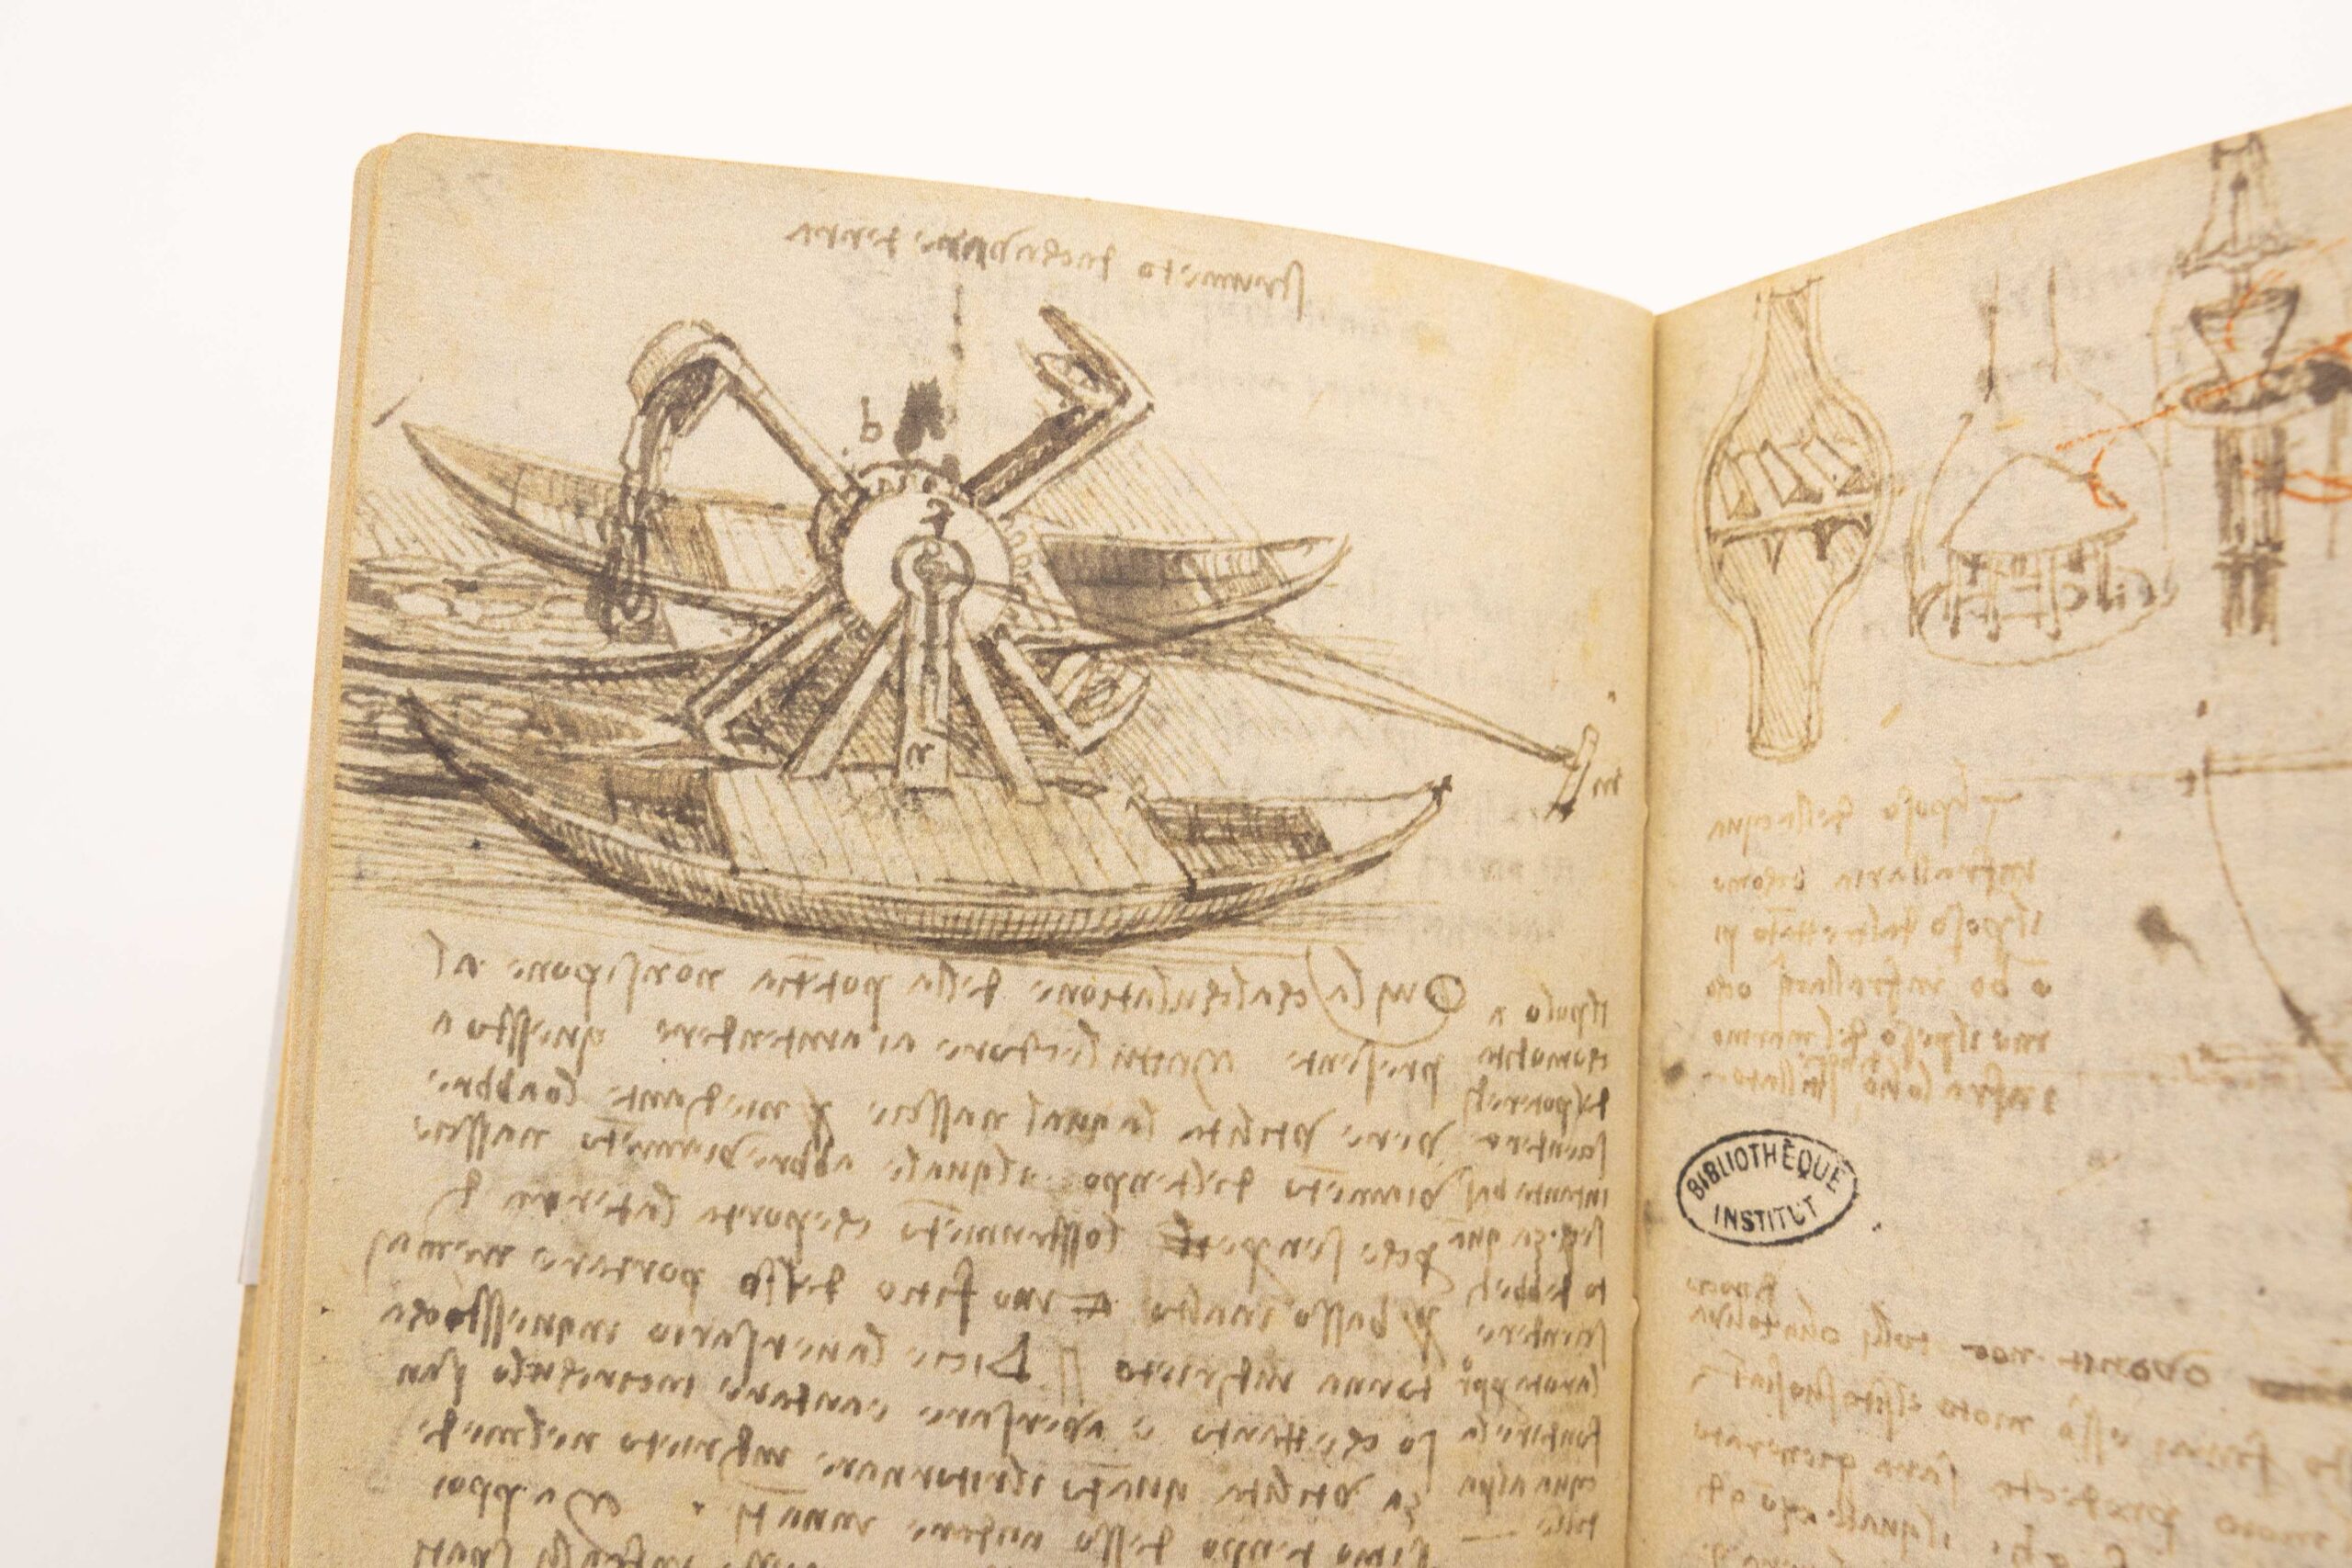 Augeschlagenes Buch, dass eine von Leonardo da Vinci entworfene Wasserschöpfmaschine zeigt.